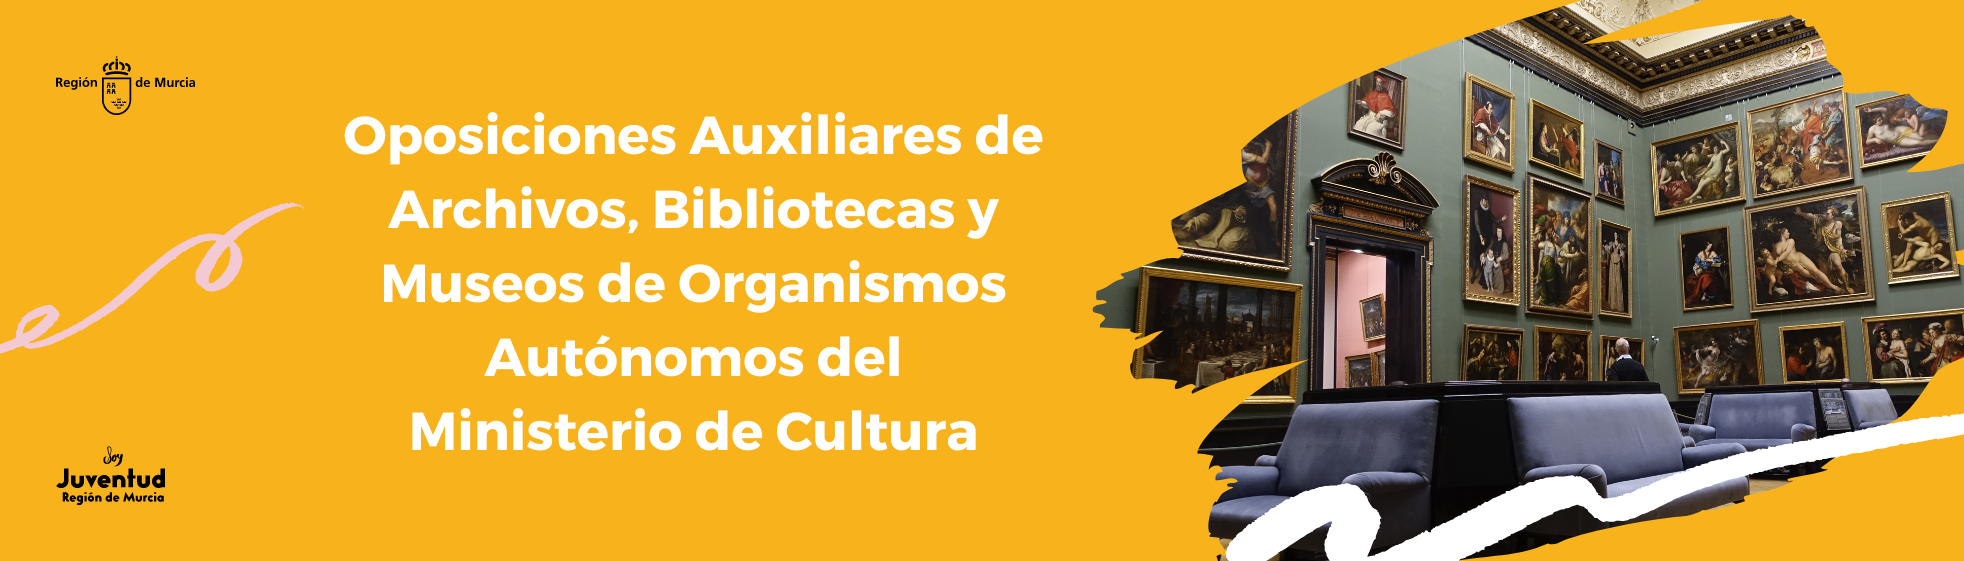 Oposiciones Auxiliares de Archivos, Bibliotecas y Museos de Organismos Autónomos del Ministerio de Cultura